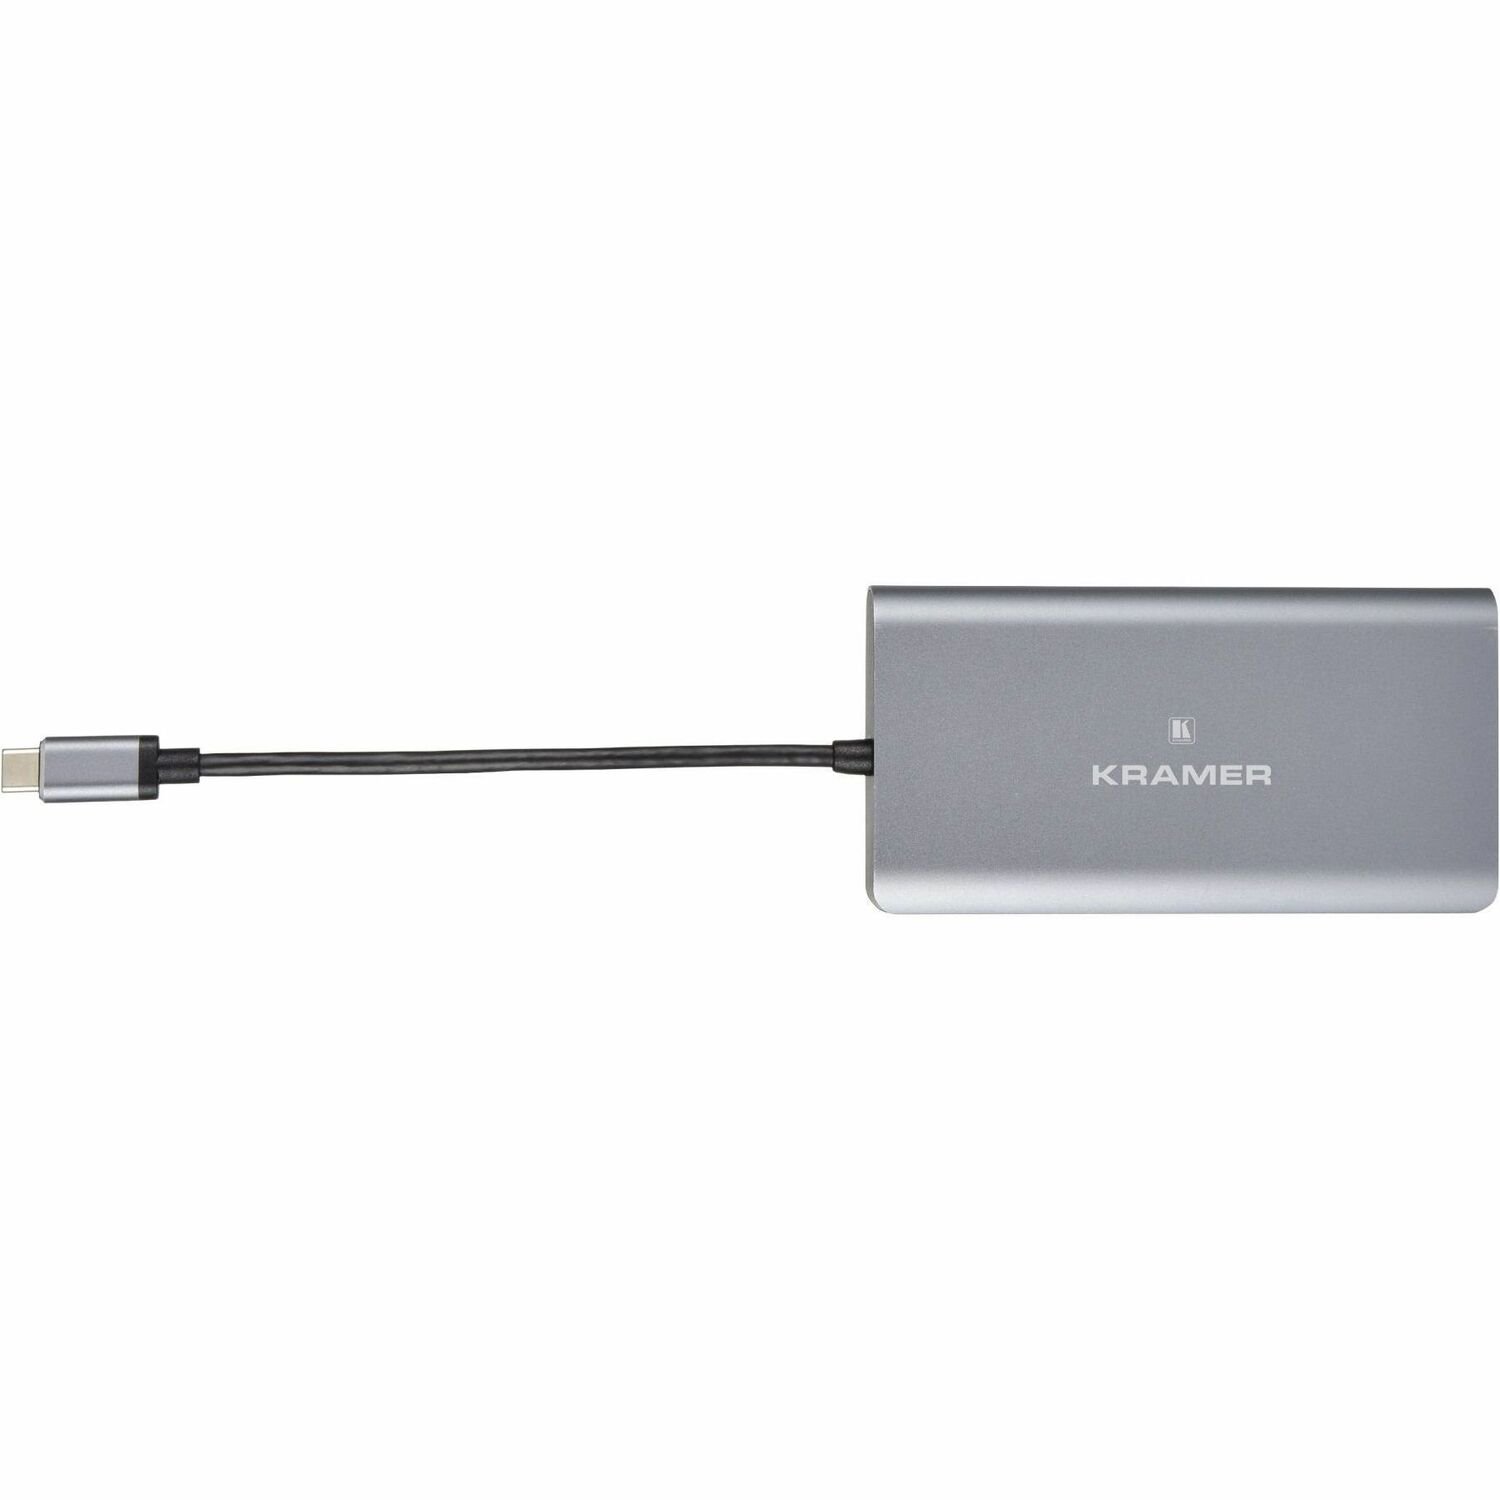 Kramer USB Type C Docking Station for Notebook/Tablet/Smartphone - Memory Card Reader - SD